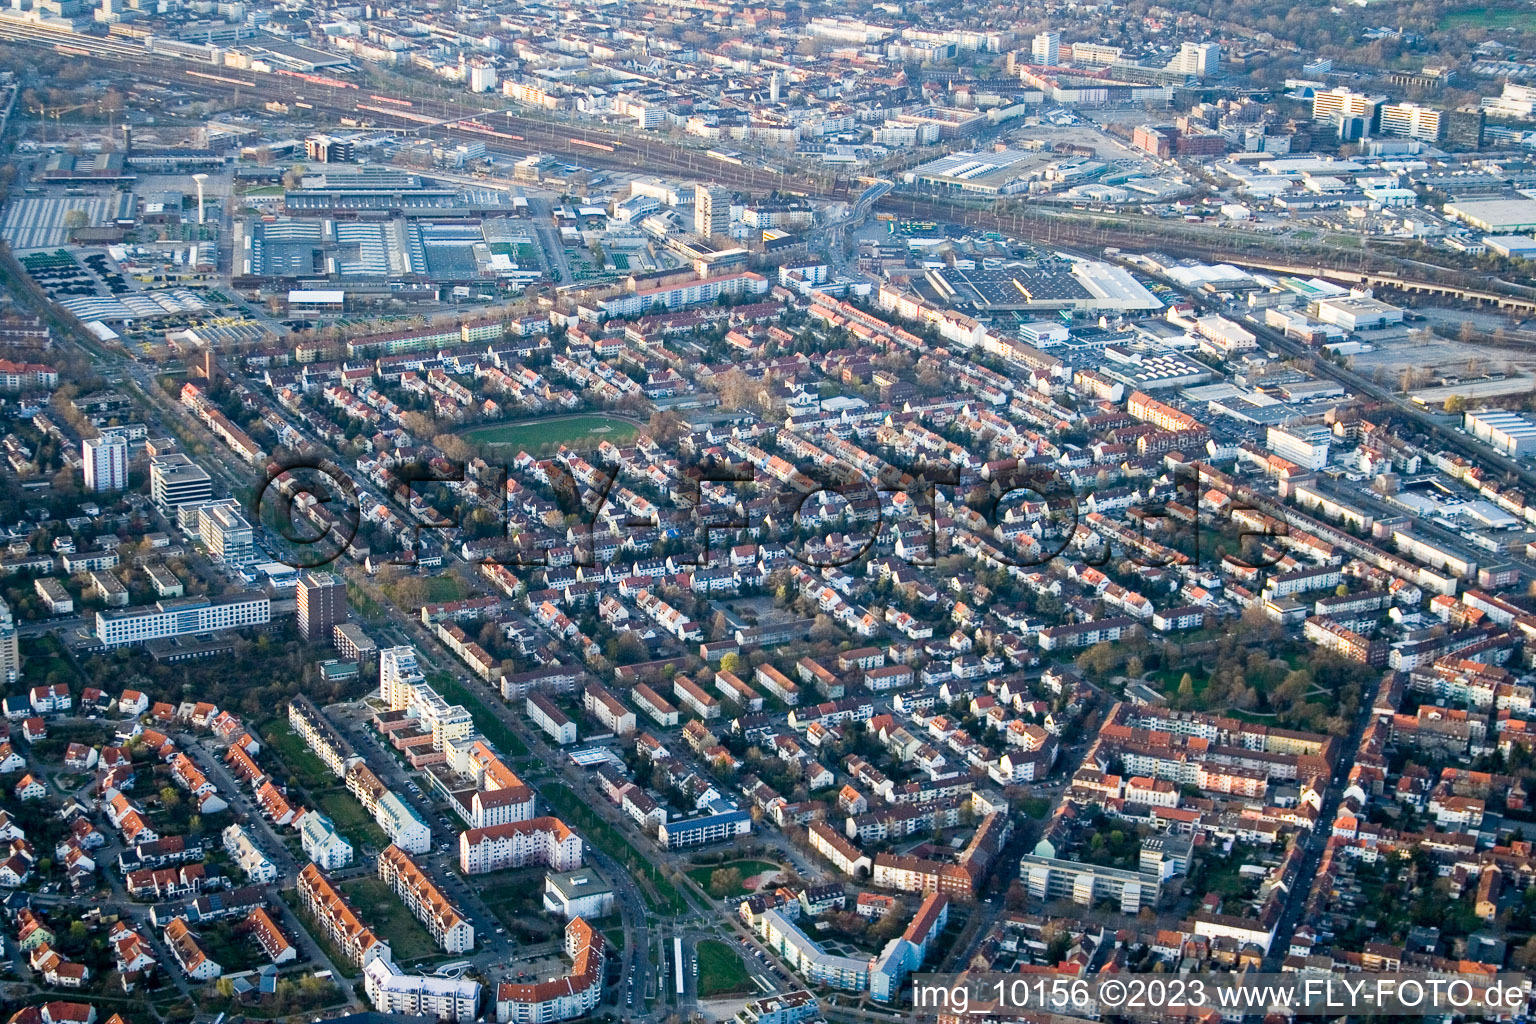 Luftbild von Almenhof im Ortsteil Lindenhof in Mannheim im Bundesland Baden-Württemberg, Deutschland